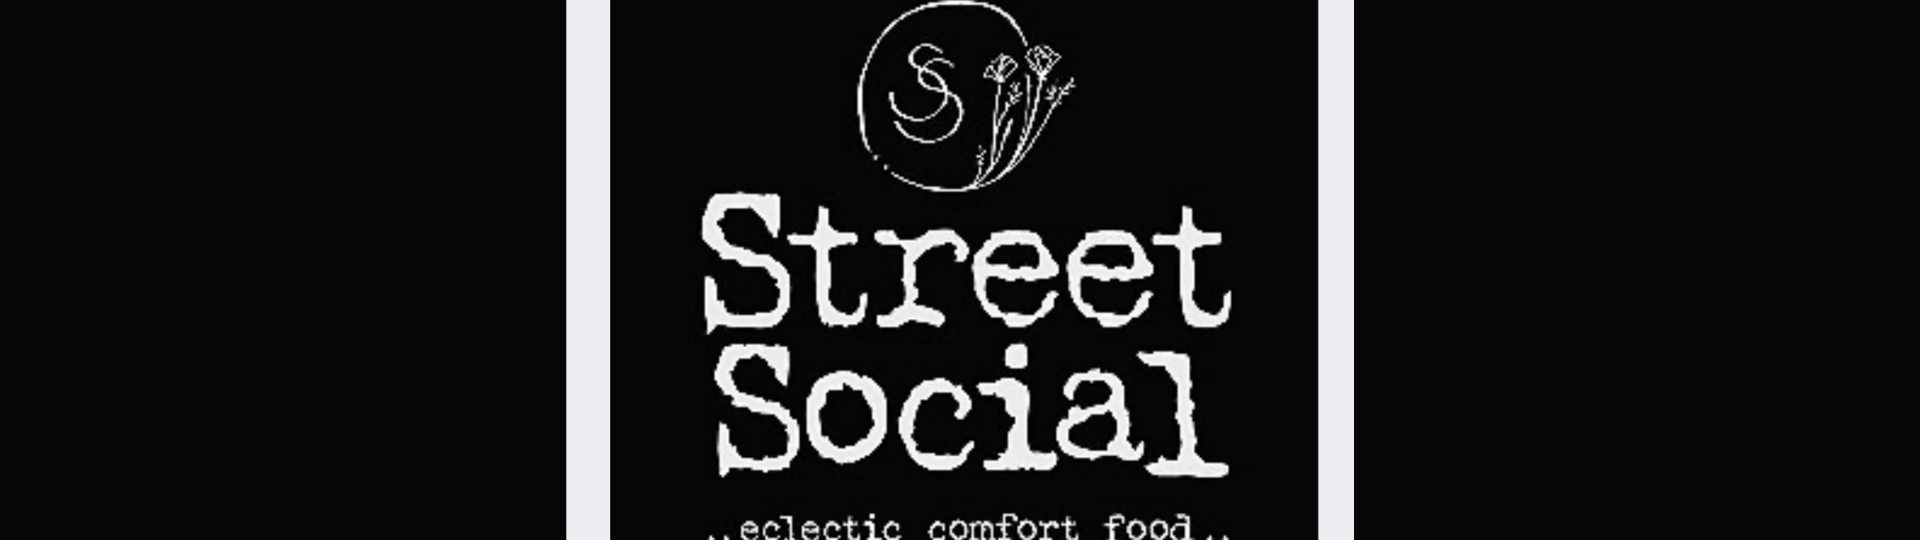 Street Social